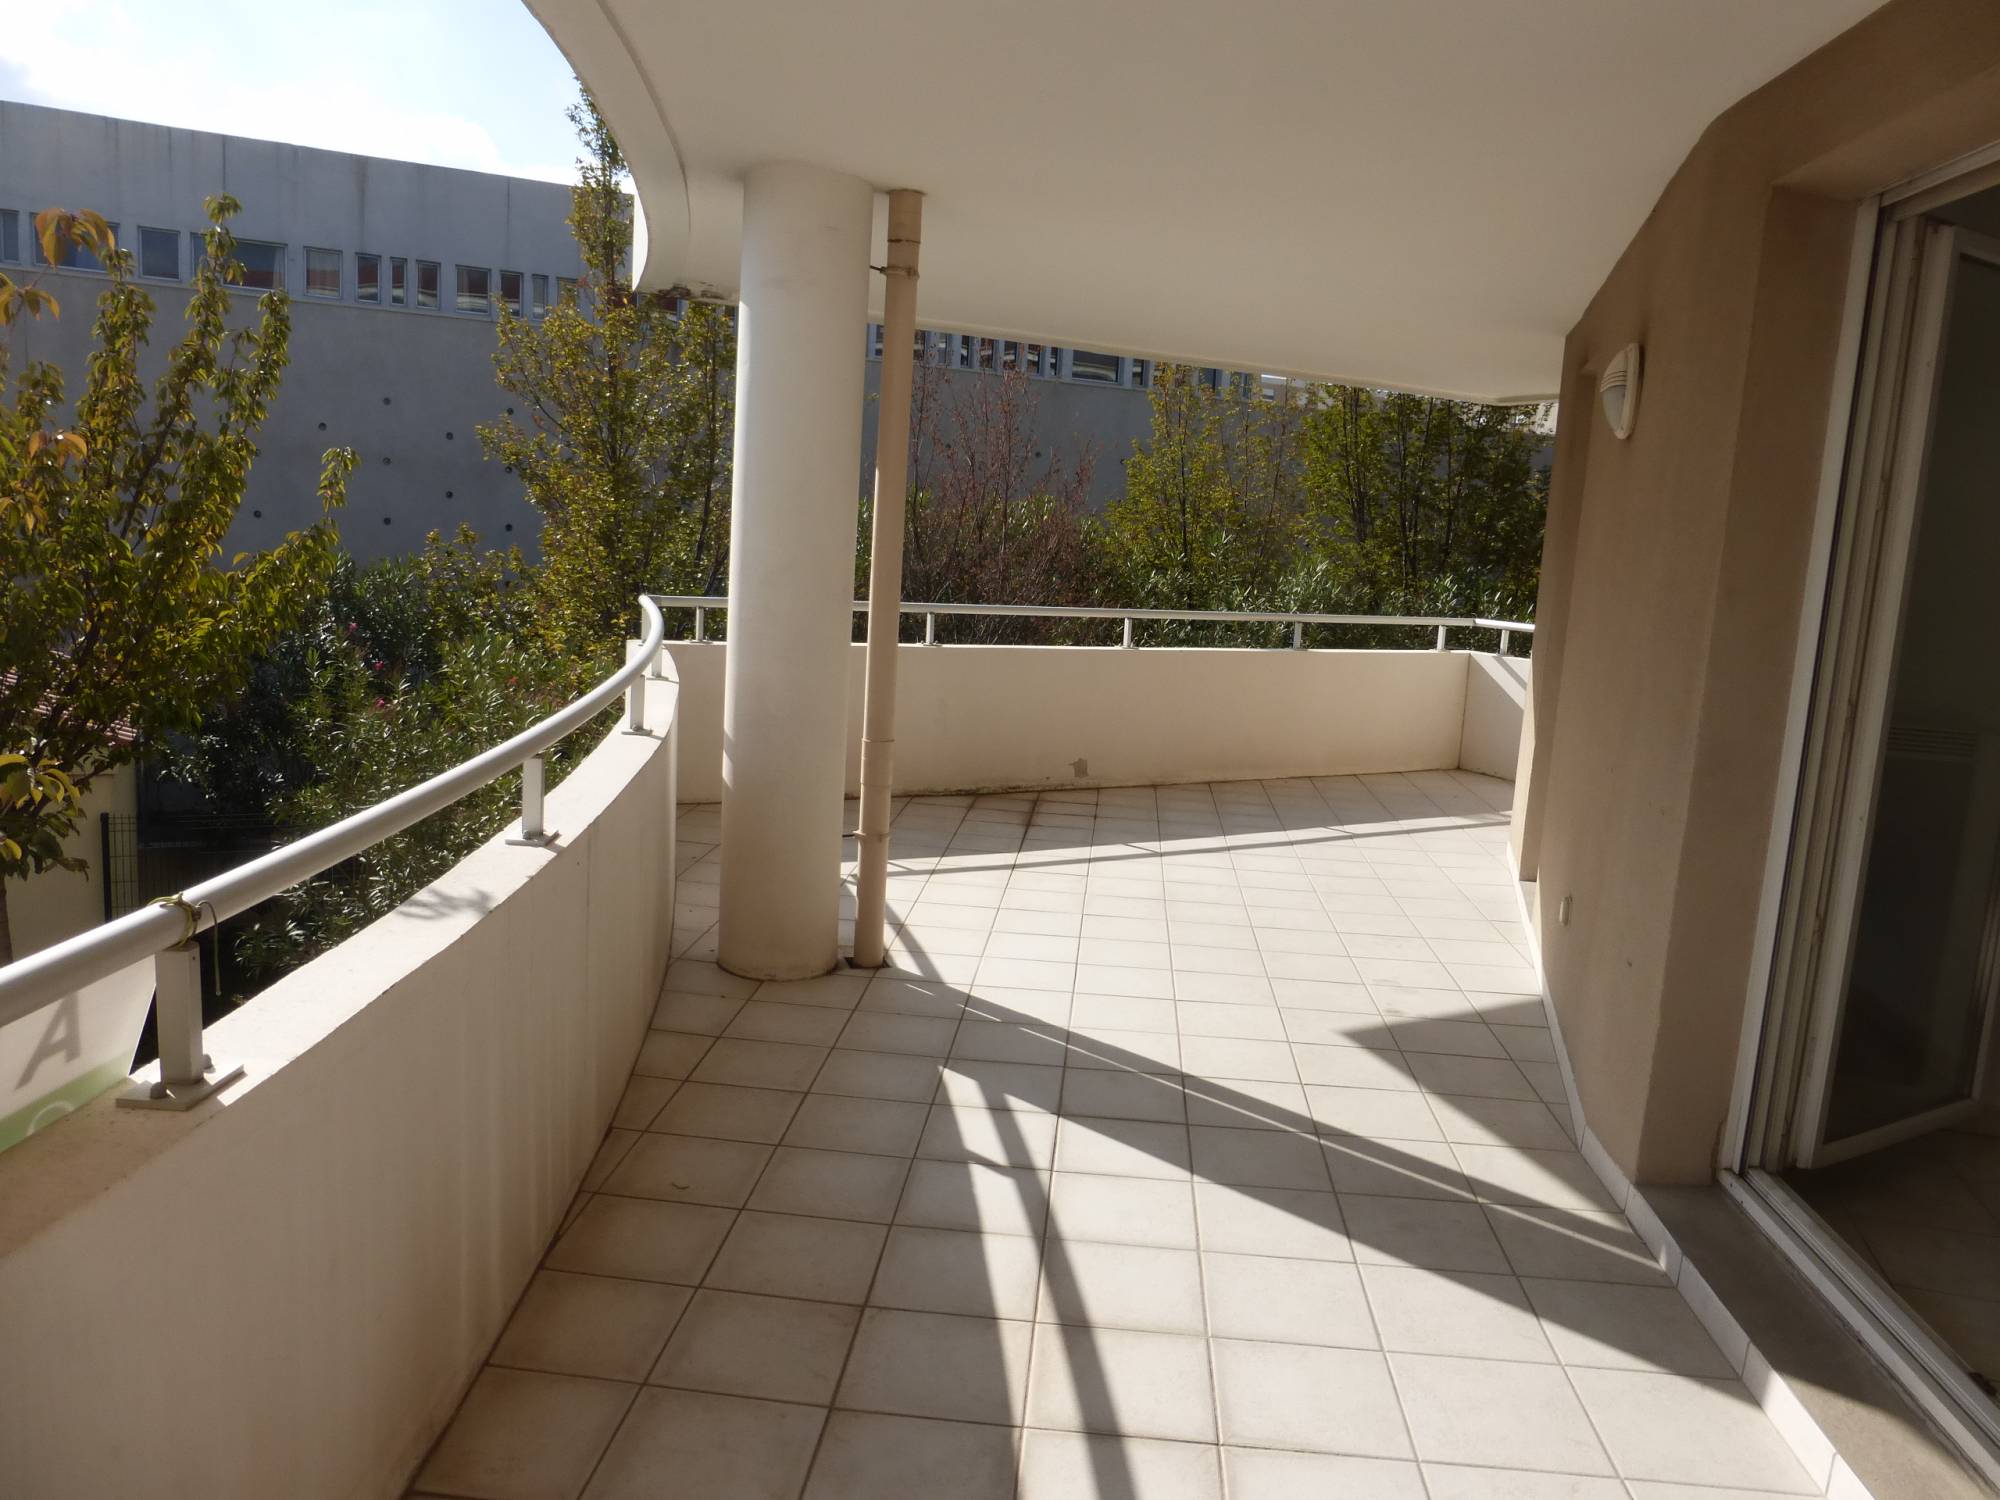 A vendre appartement 3 pièces d'environ 55 m² avec terrasse de 29 m² et place de parking privative entre Saint Jean du désert et la Fourragère 13012 Marseille 